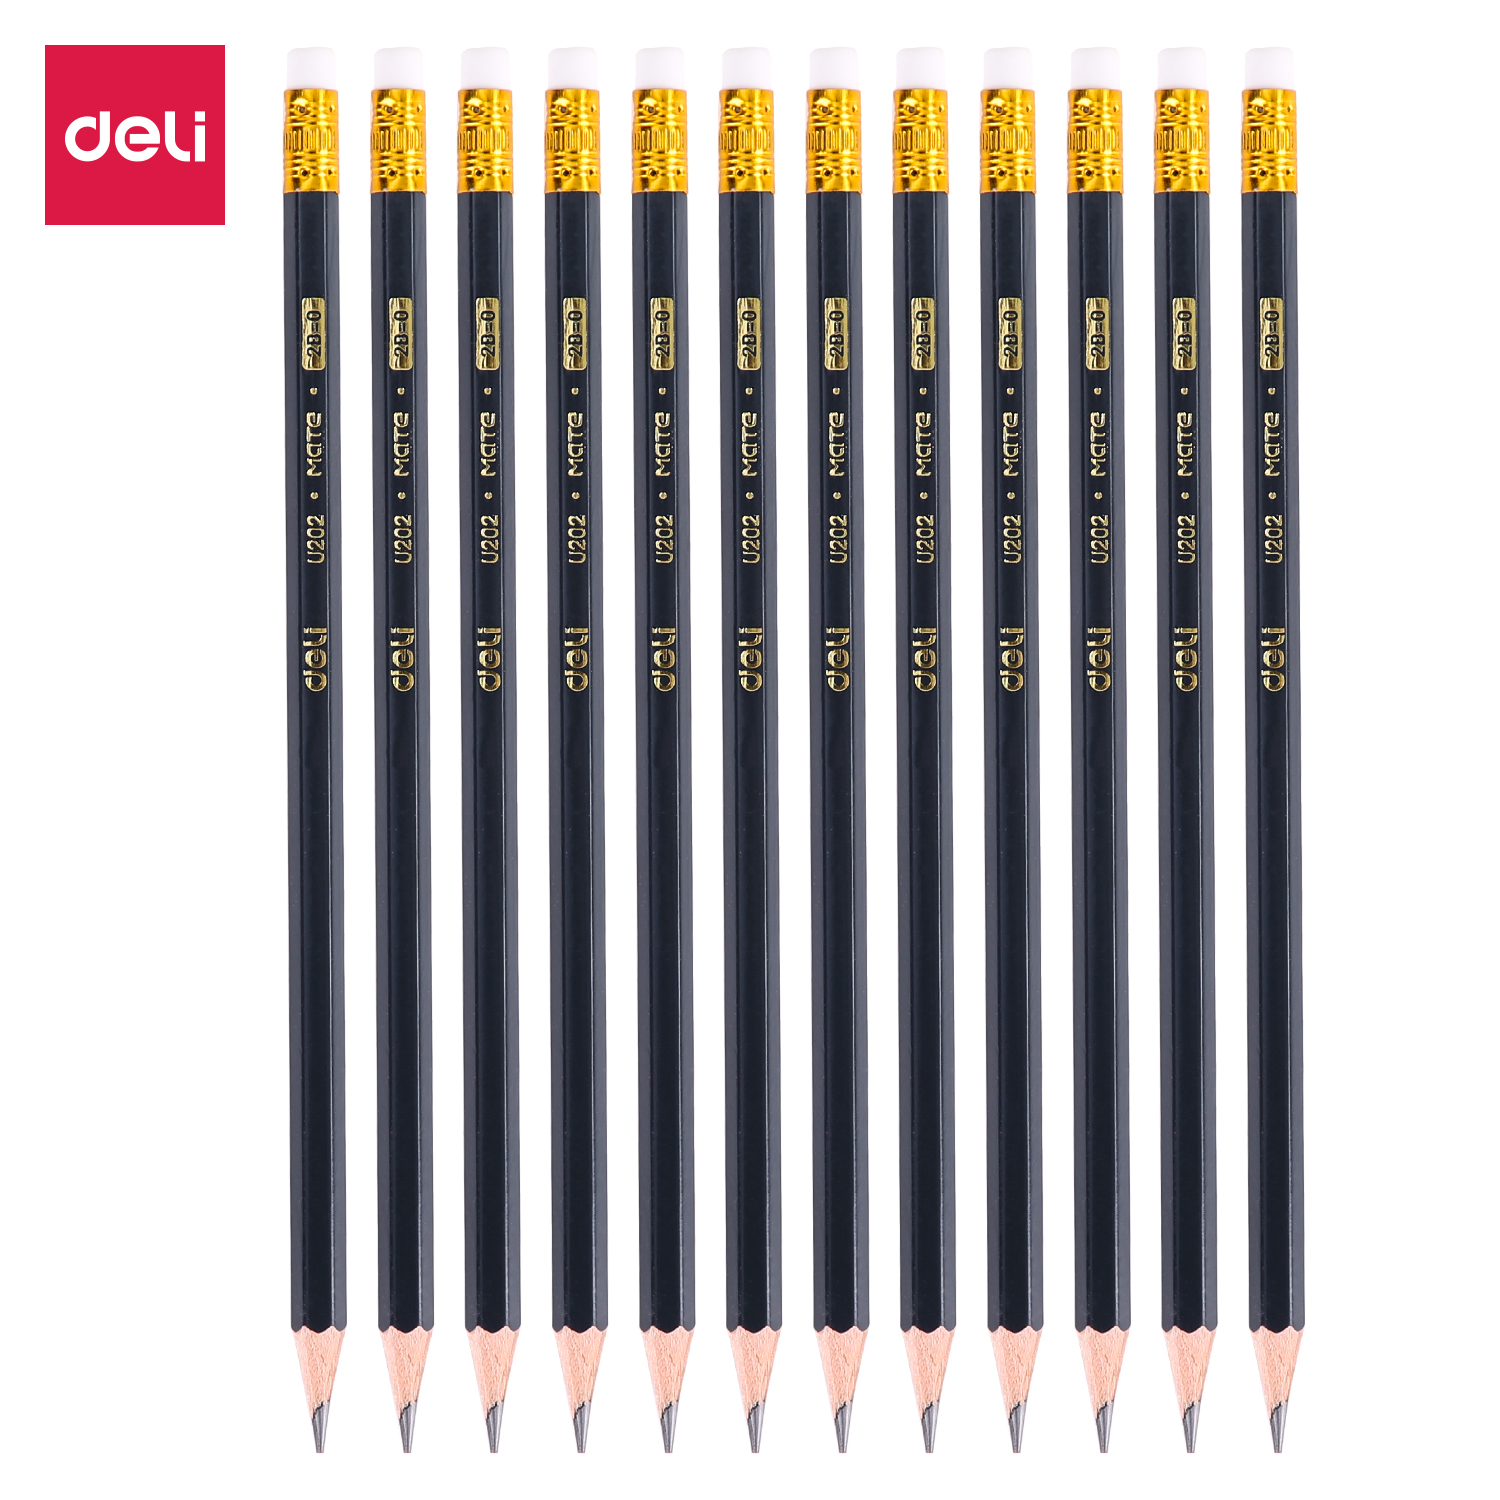 Deli-EU20200 Graphite Pencil